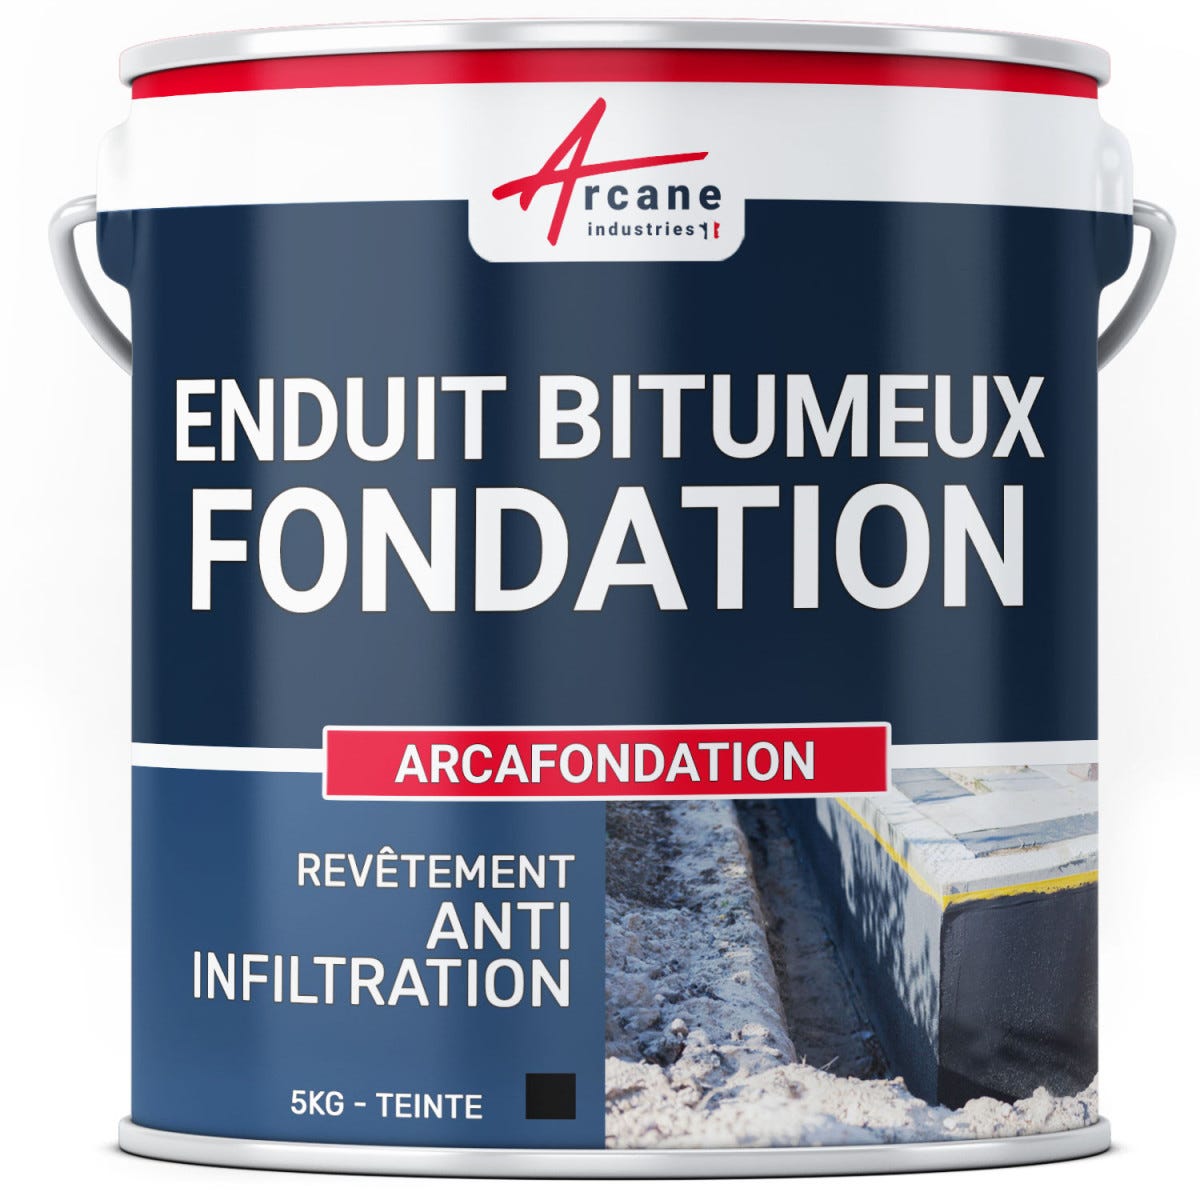 Enduit bitumineux pour Fondations Murs enterrés - ARCAFONDATION - 5 kg - Noir - ARCANE INDUSTRIES 0